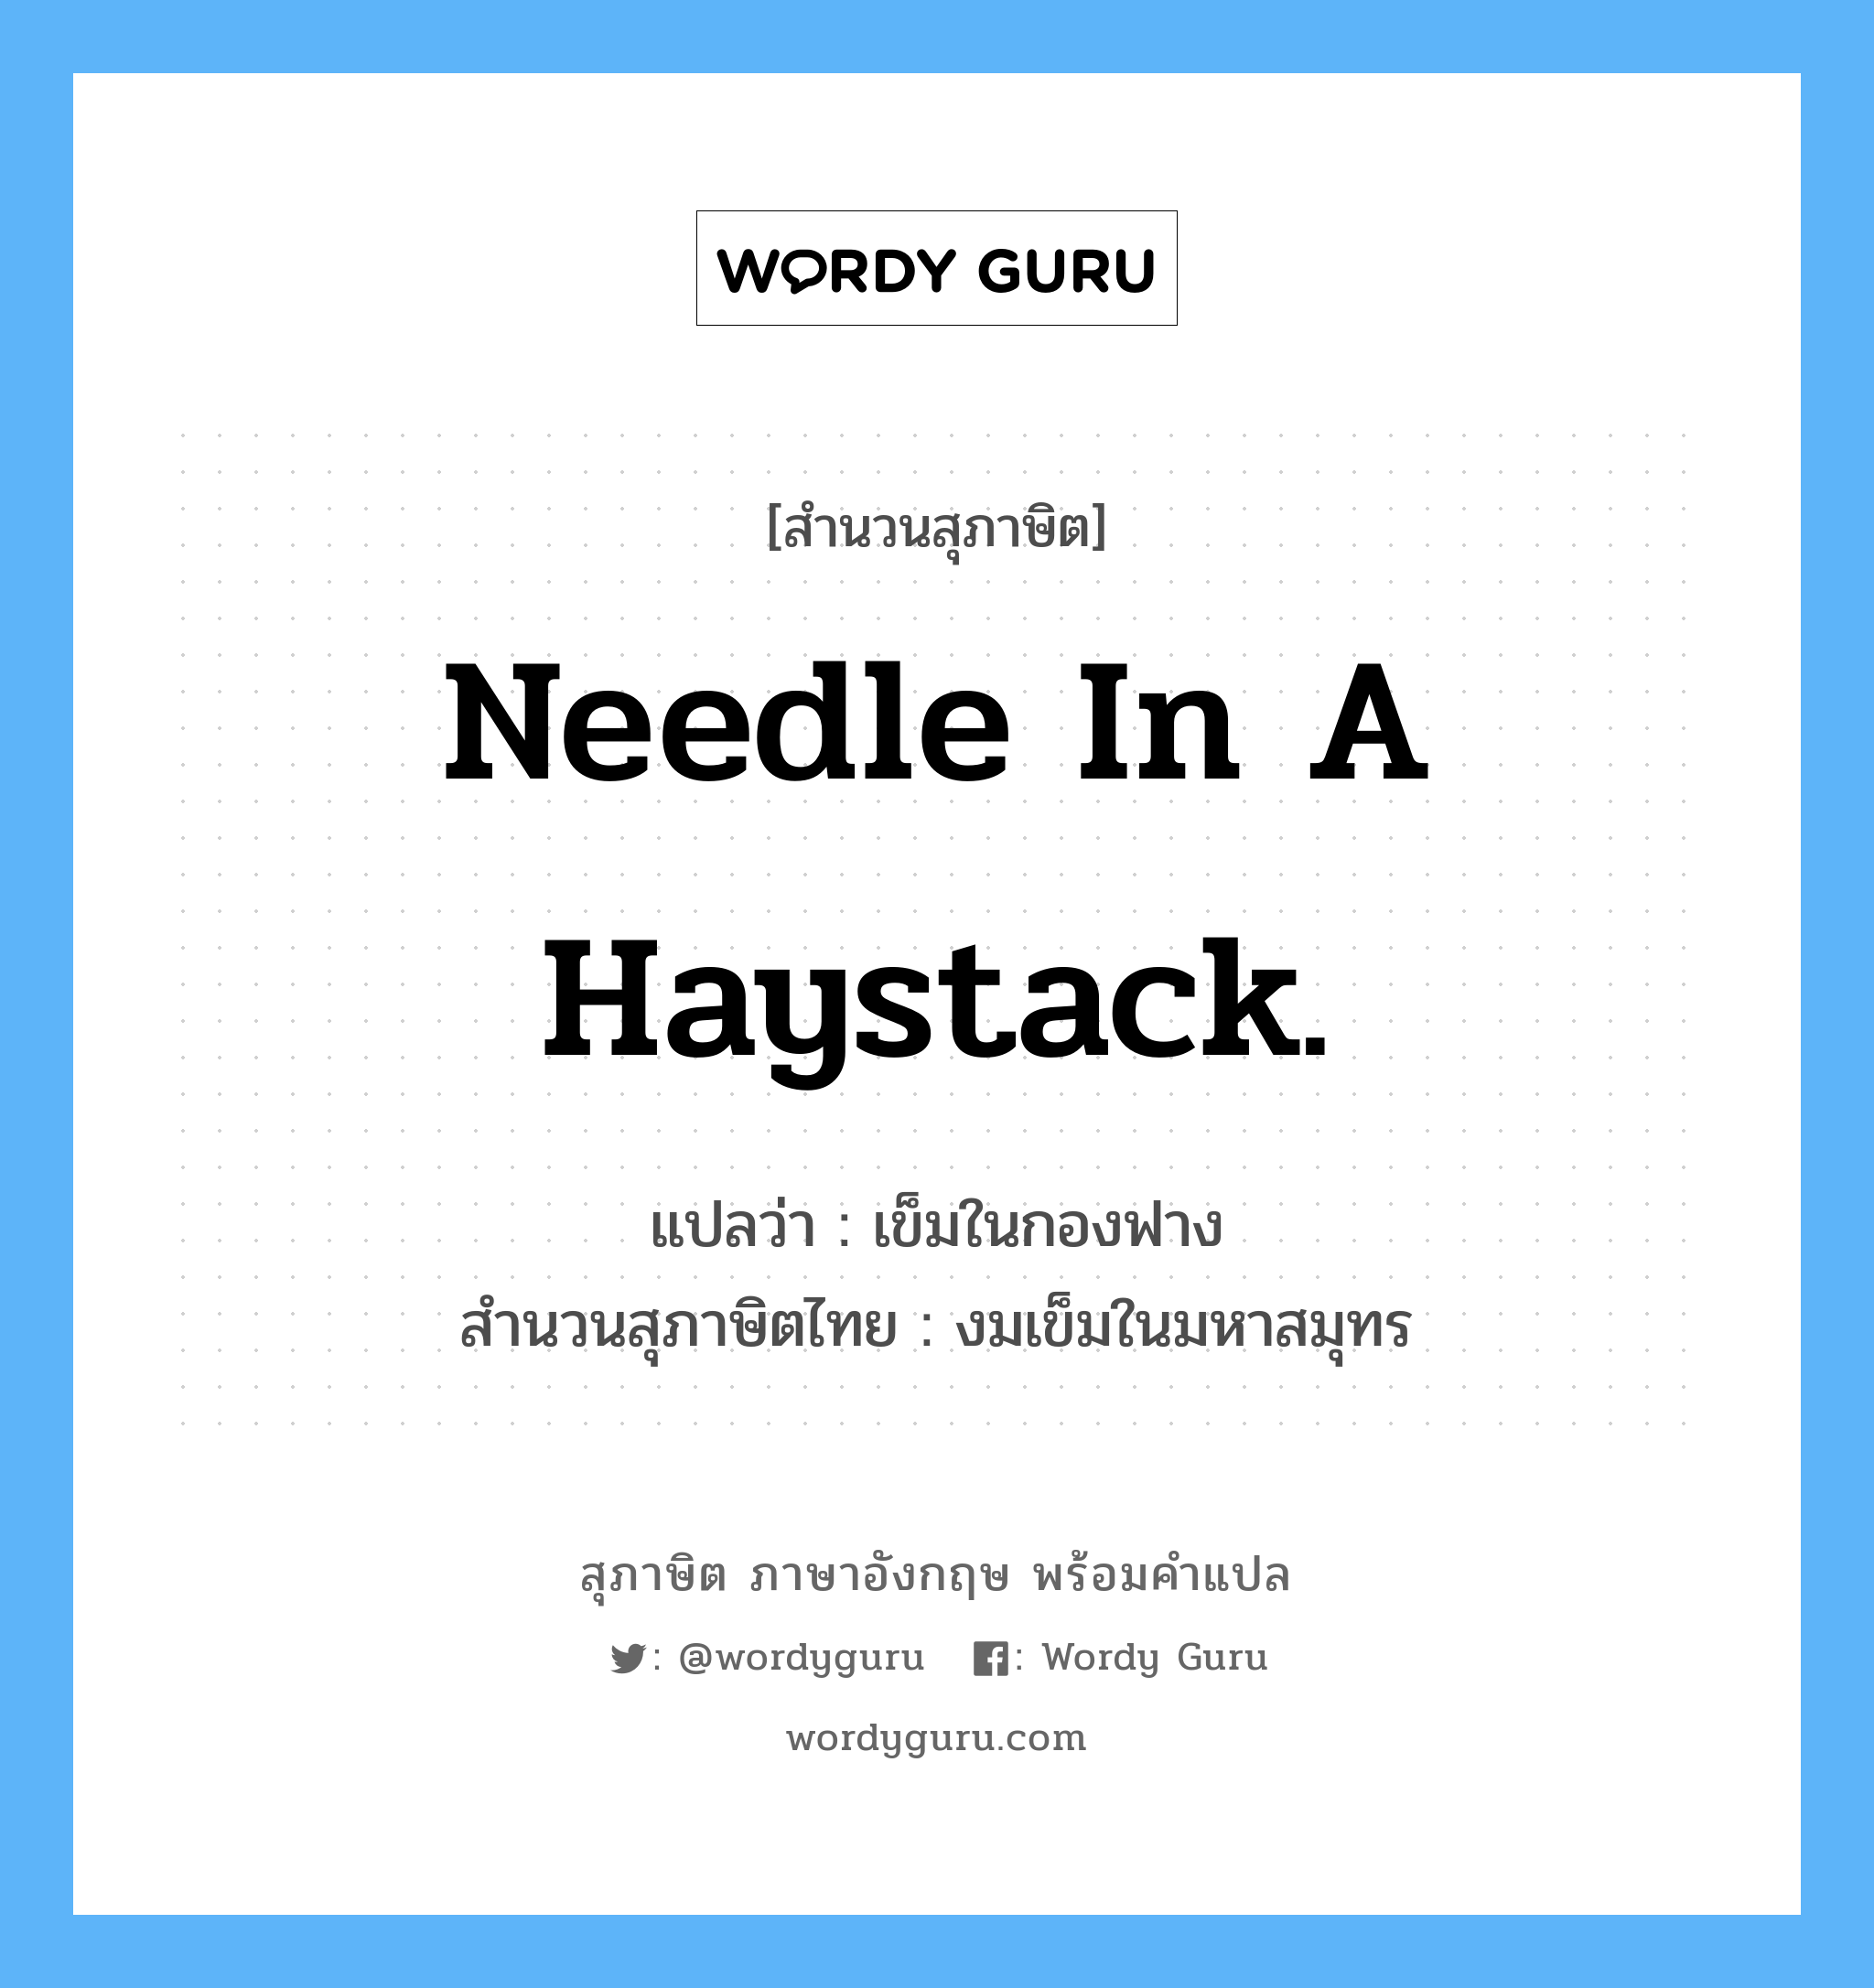 Needle in a haystack. แปลว่า?, สำนวนสุภาษิต ภาษาอังกฤษ Needle in a haystack. แปลว่า เข็มในกองฟาง สำนวนสุภาษิตไทย งมเข็มในมหาสมุทร